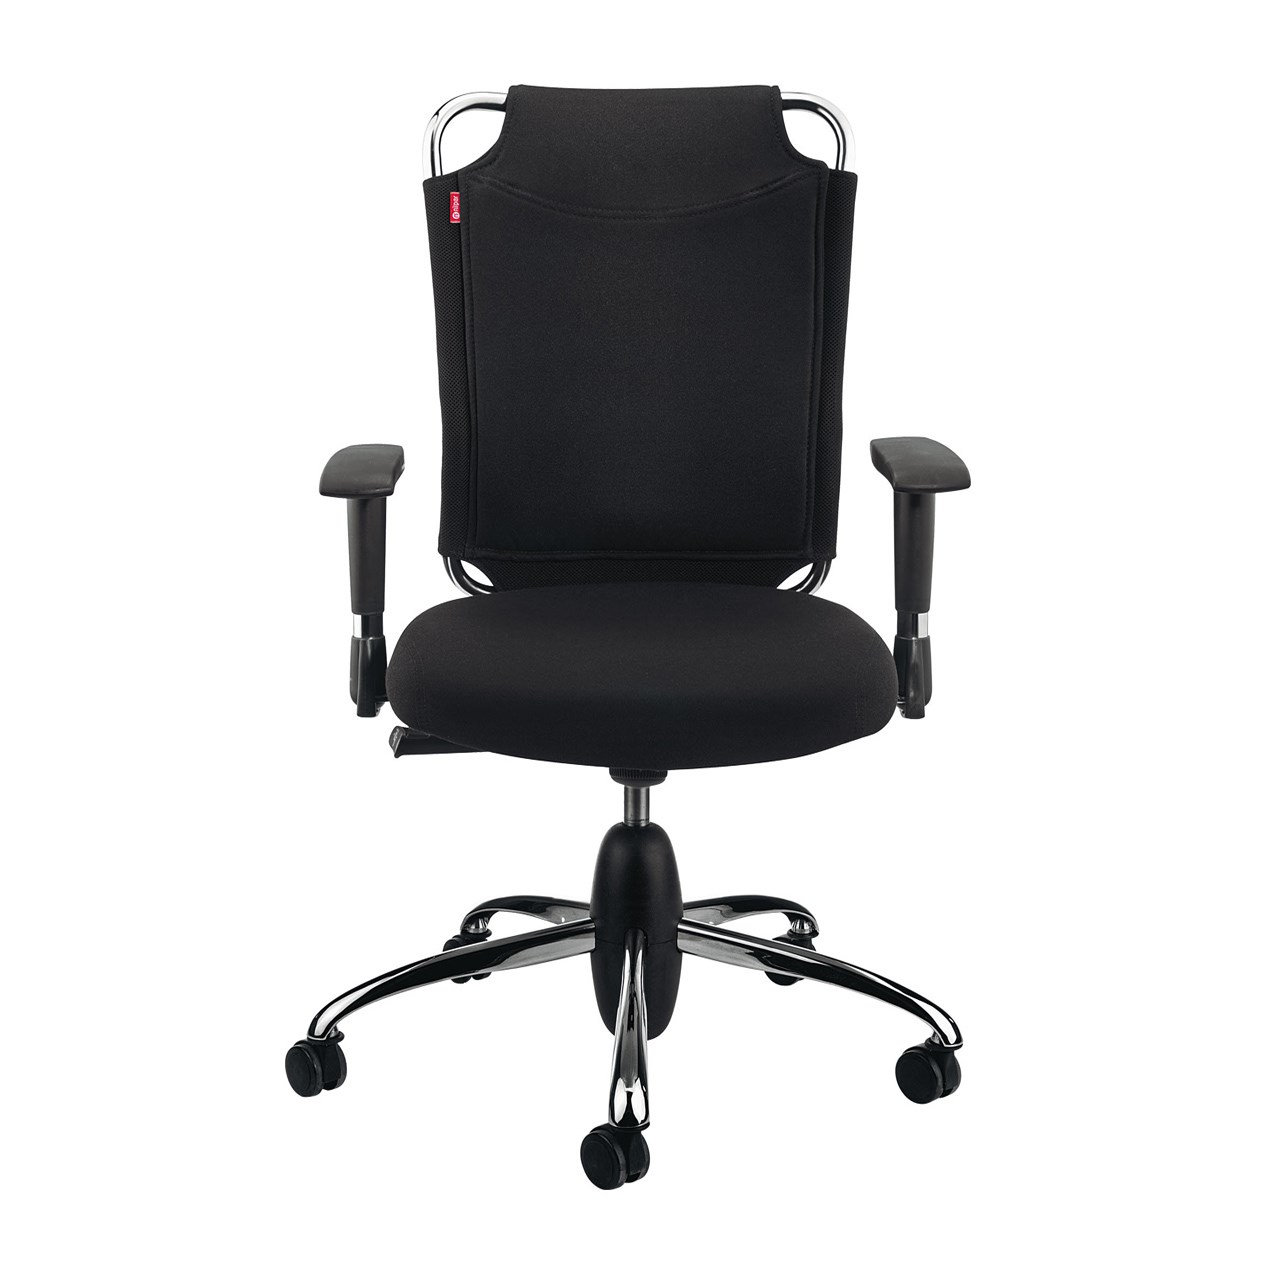 صندلی اداری نیلپر مدل SK712t پارچه ای